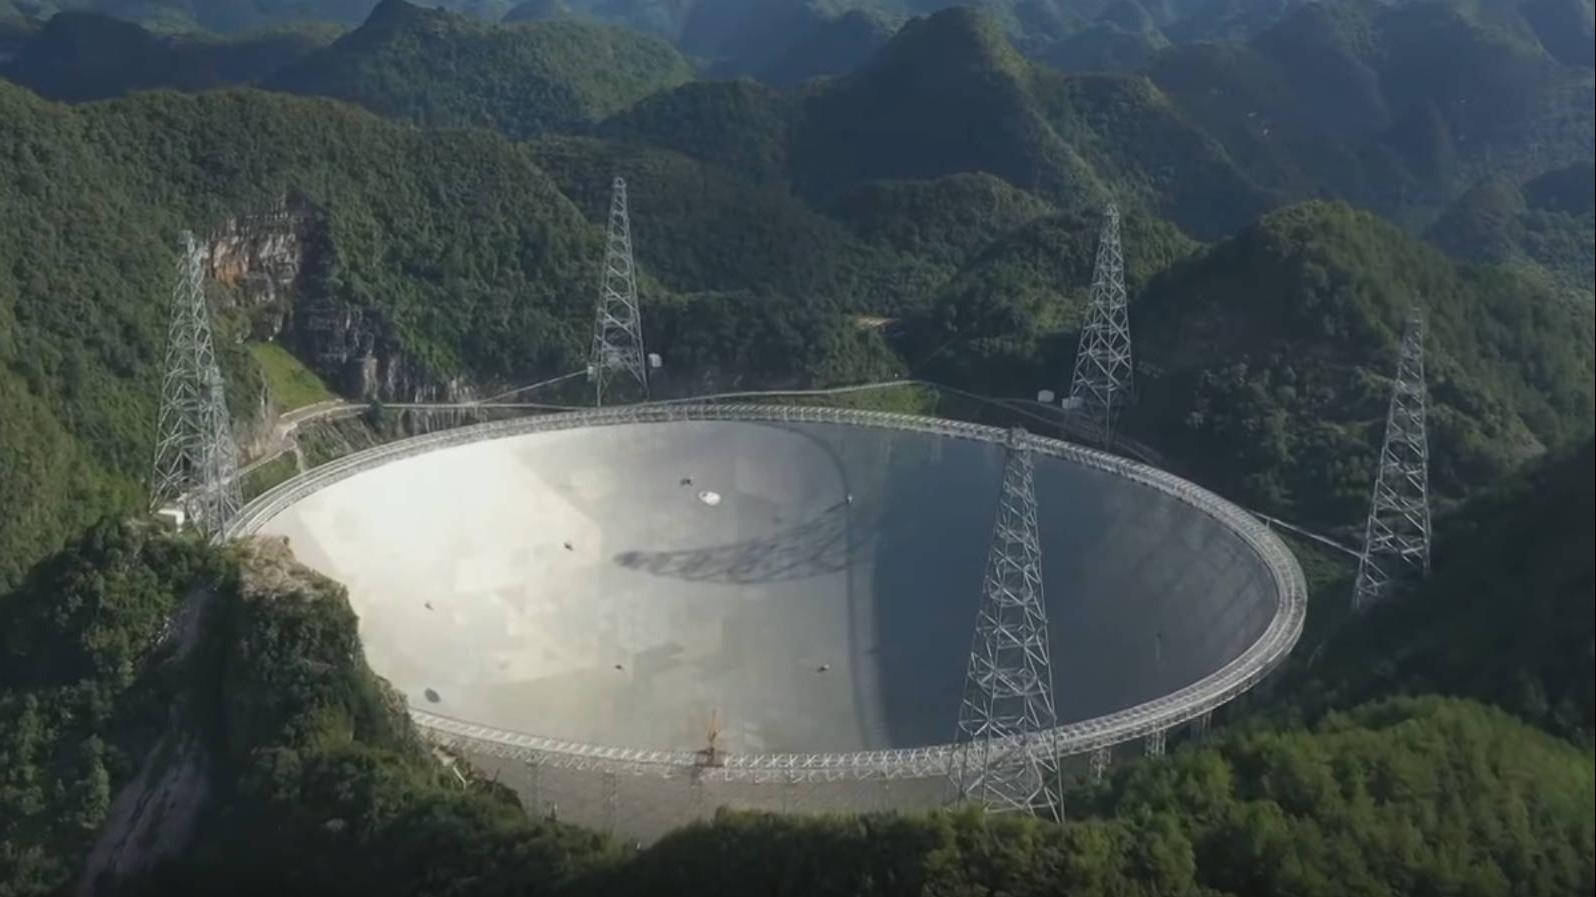 Око неба. Швидкий — найбільший і найчутливіший радіотелескоп у світі, глибоко в китайському лісі